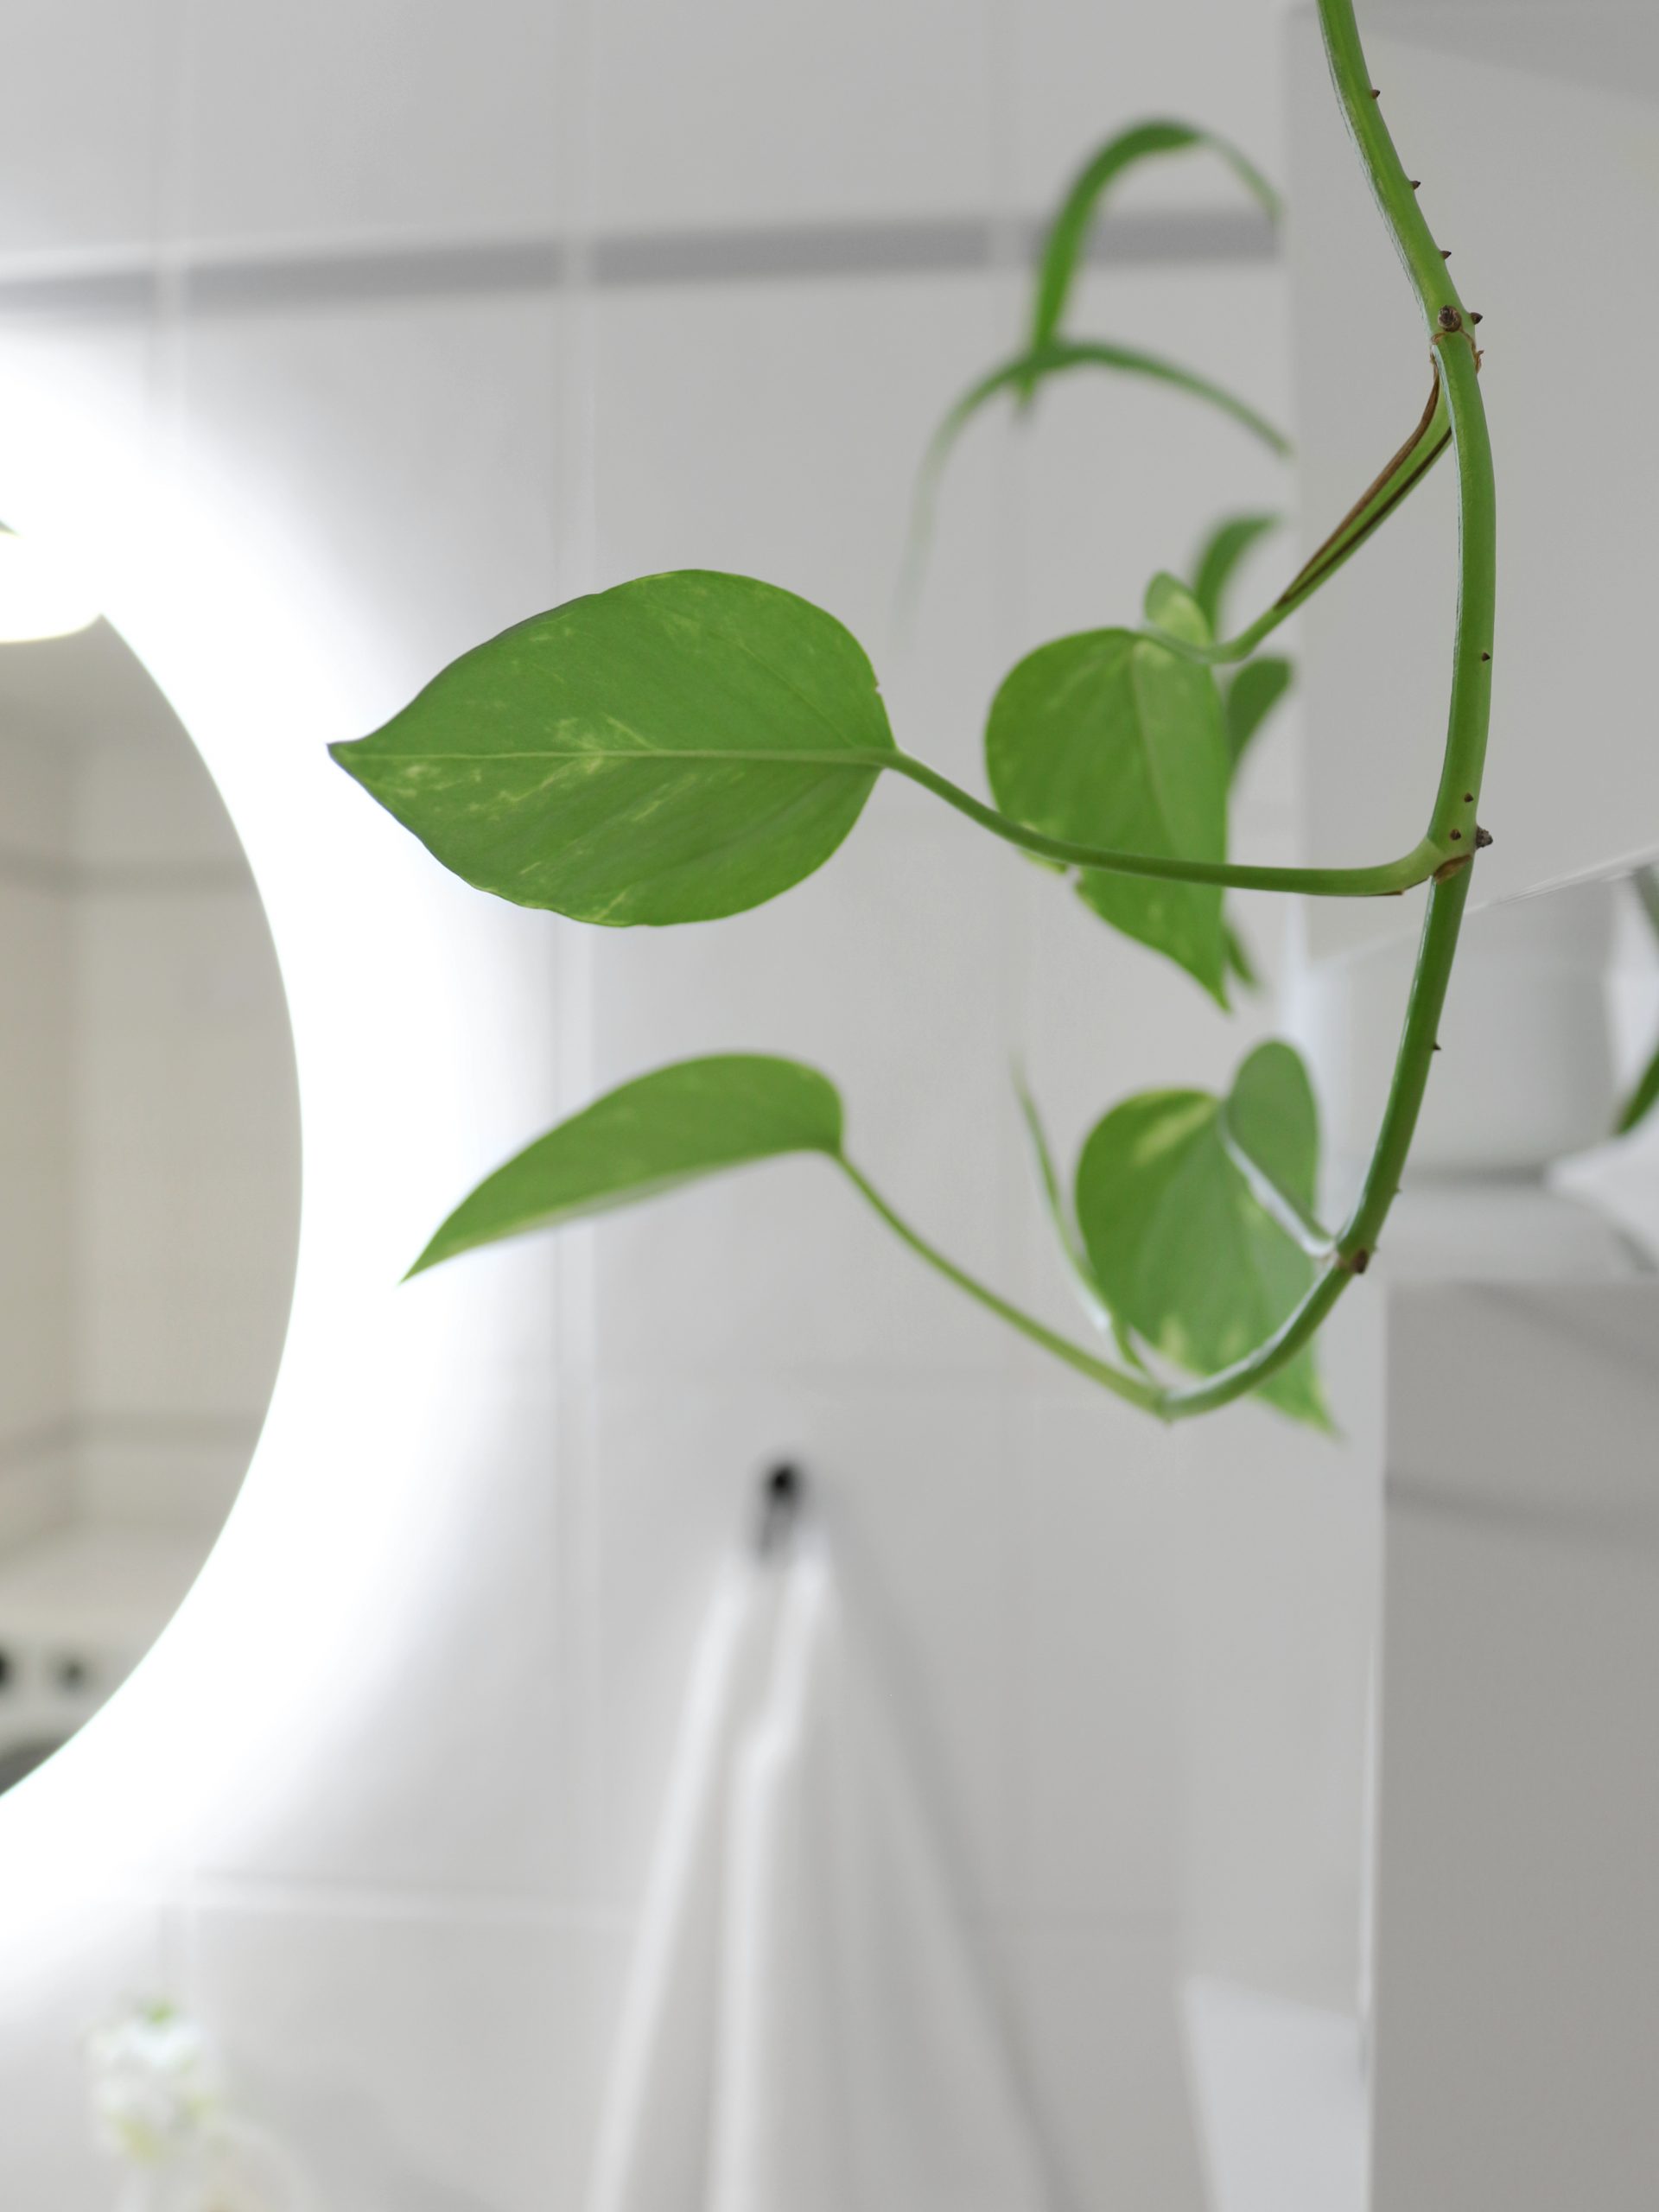 Viherkasvit kylpyhuoneessa - Täydellinen väripaletti valkoinen, vihreä ja harmaa - Sisustusblogi Omakotivalkoinen